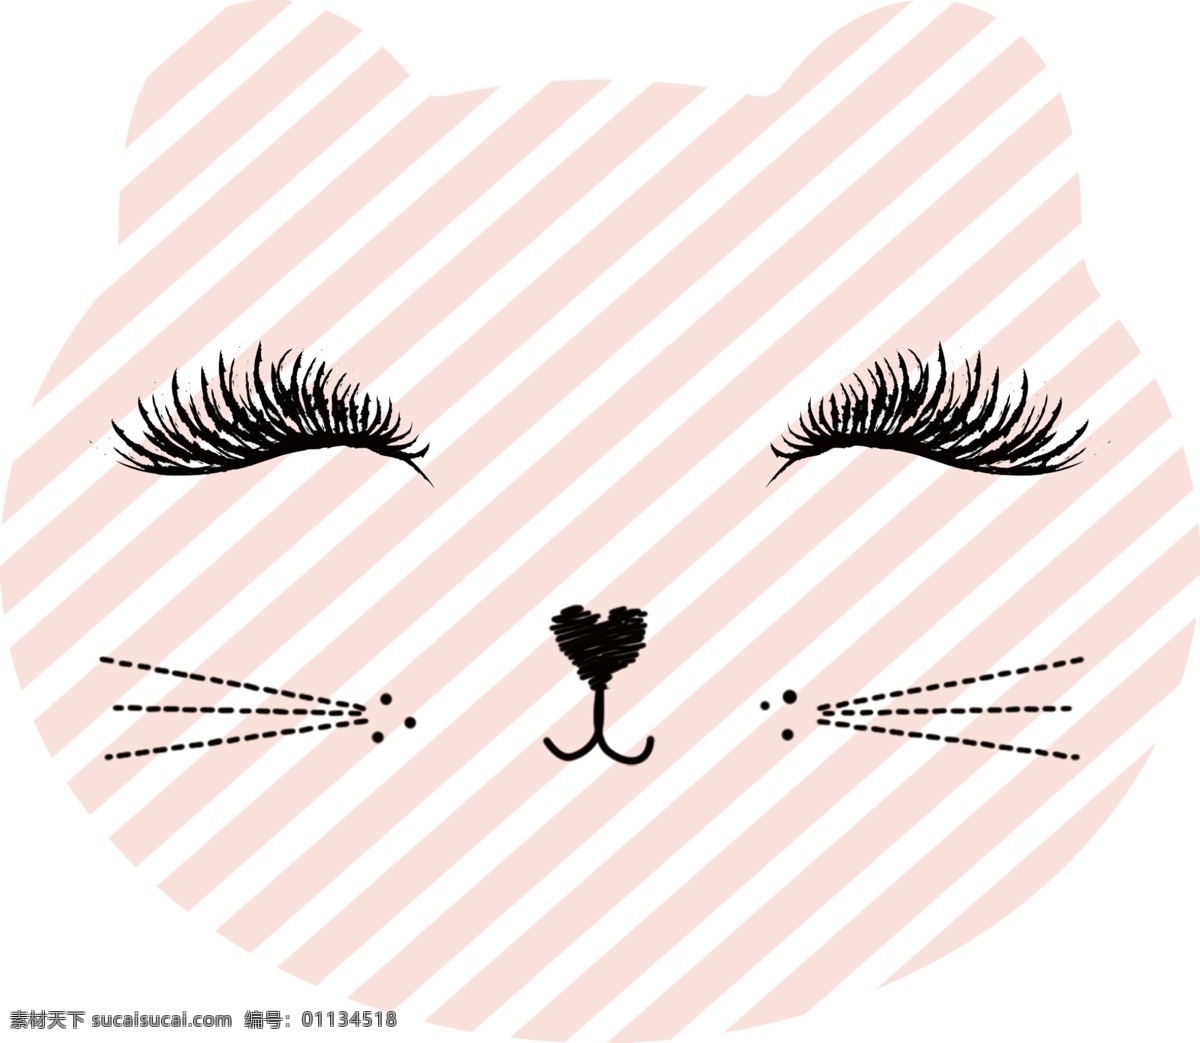 笑脸猫 条纹 粉色条纹 几何 几何图 睫毛 猫脸 笑脸 可爱 小清新 斜条纹 白色底条纹 可爱猫咪 猫形